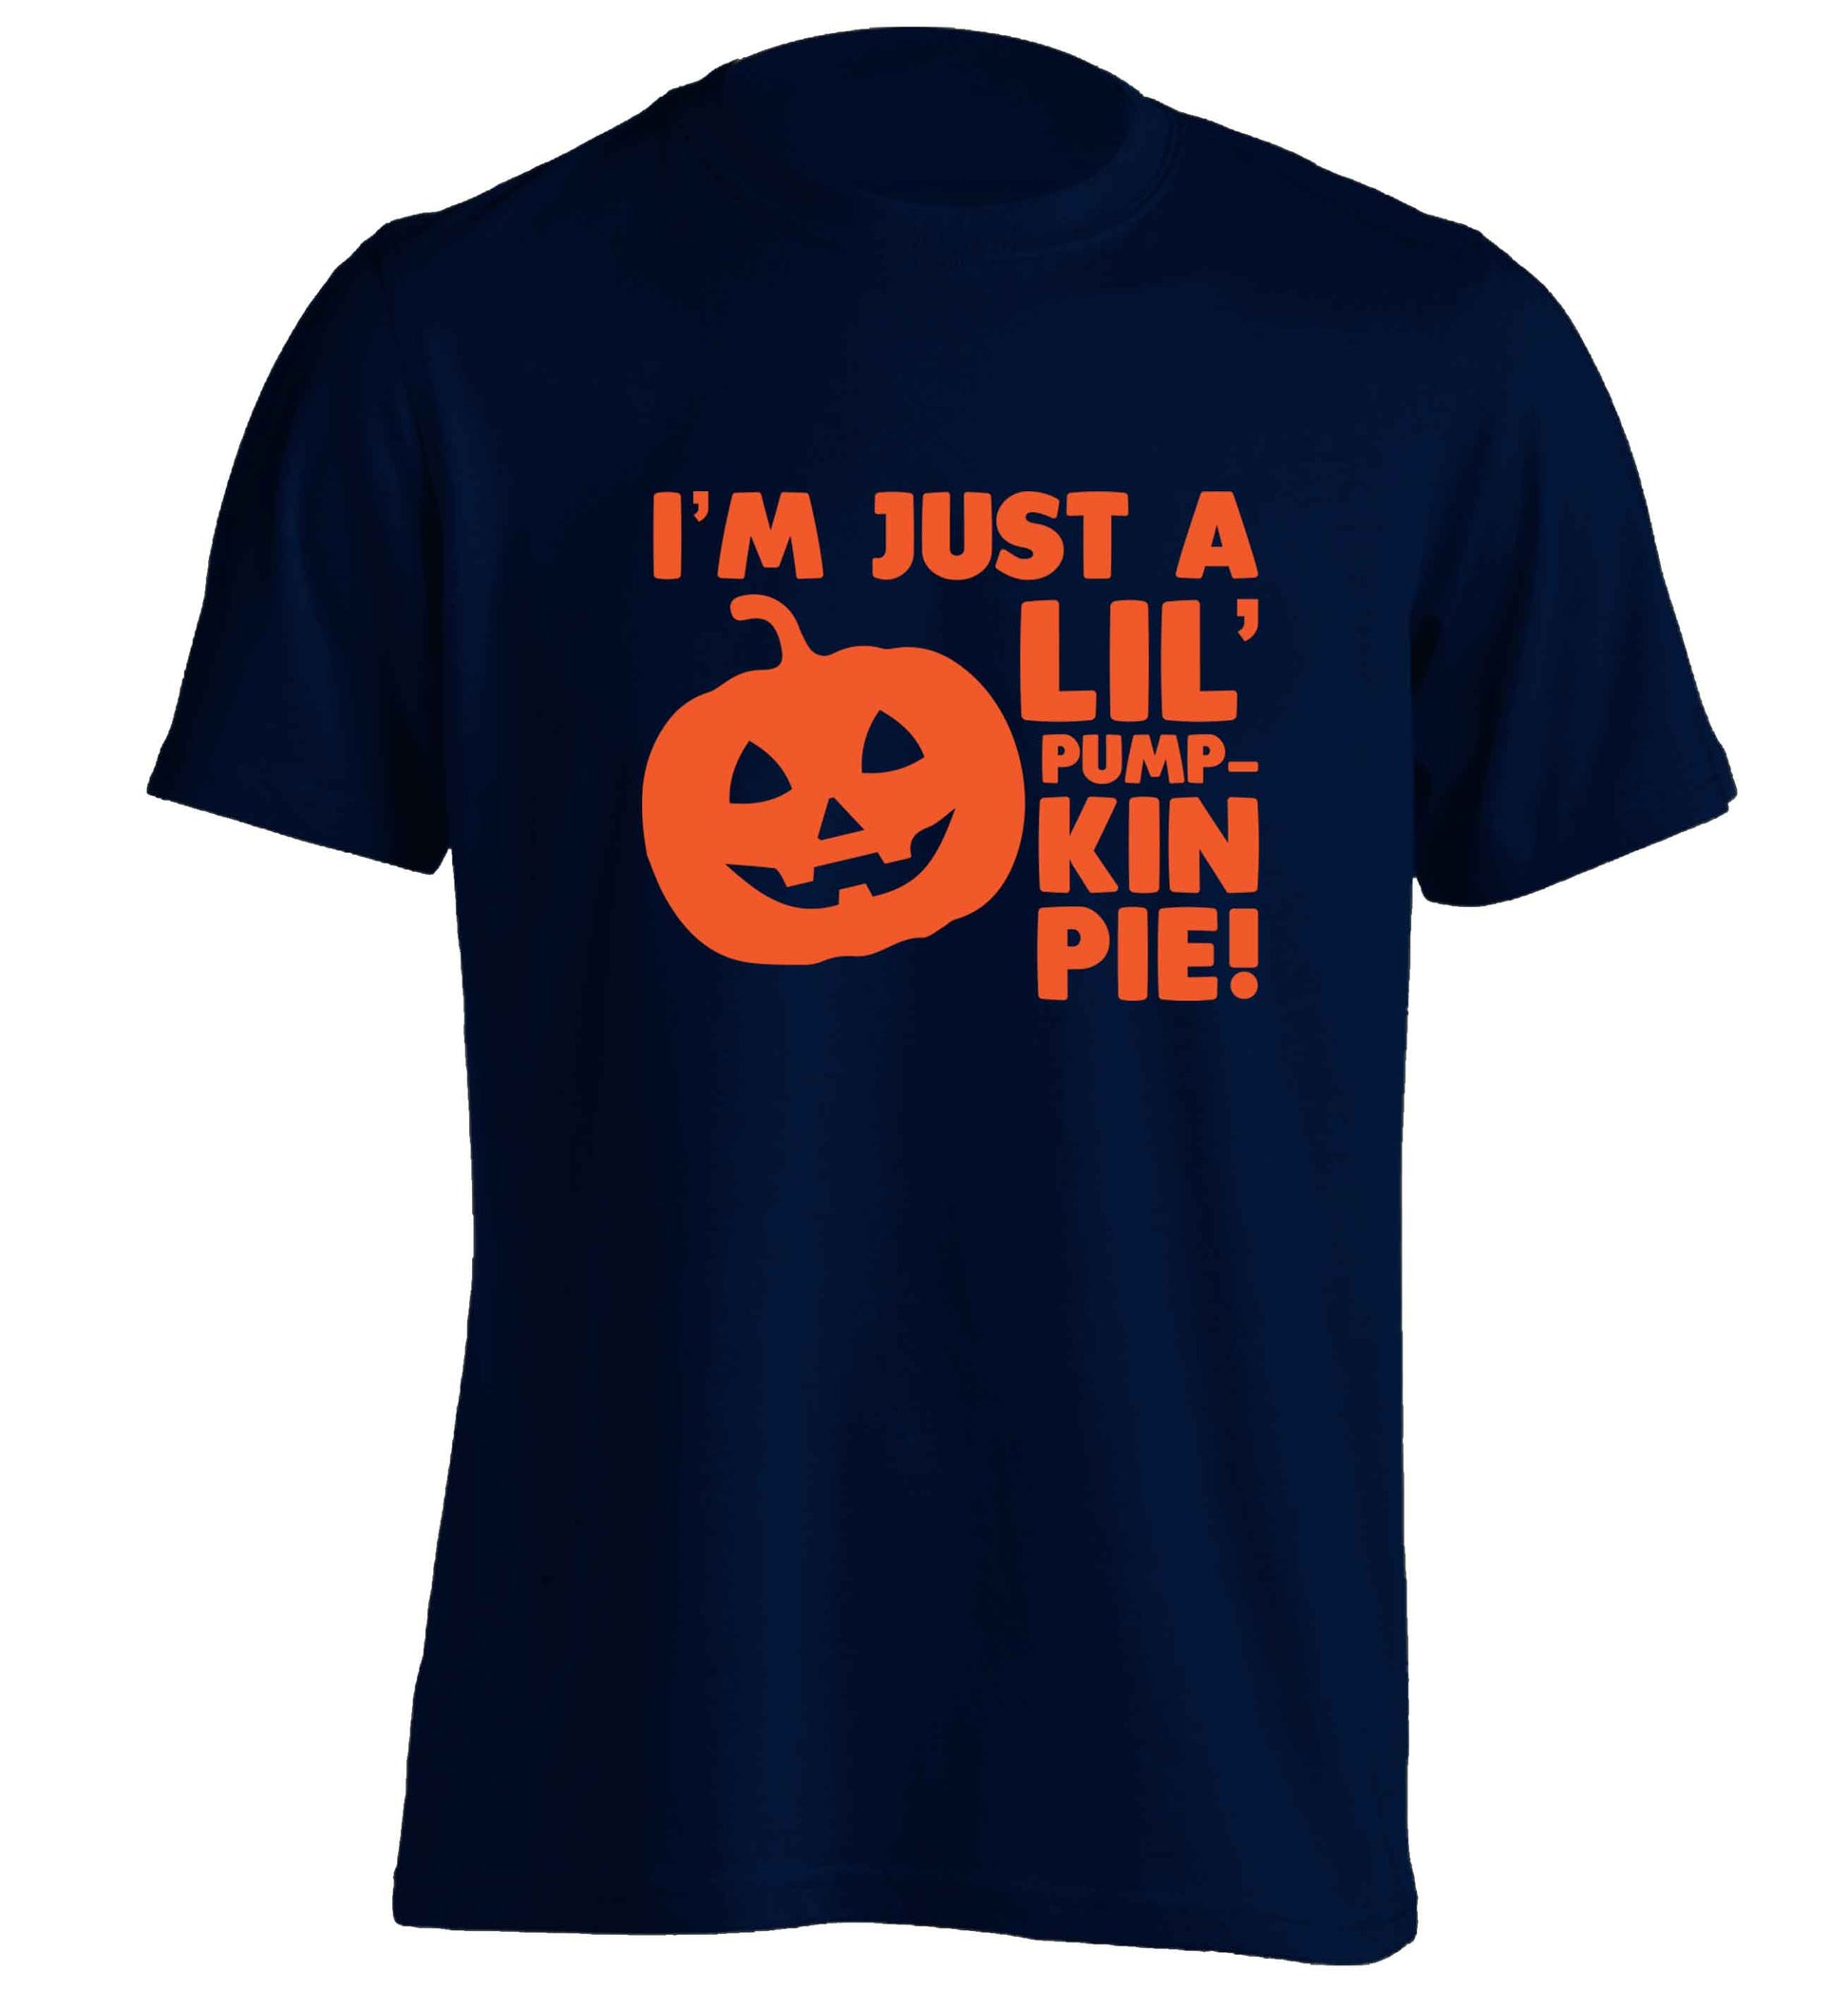 I'm just a lil' pumpkin pie adults unisex navy Tshirt 2XL